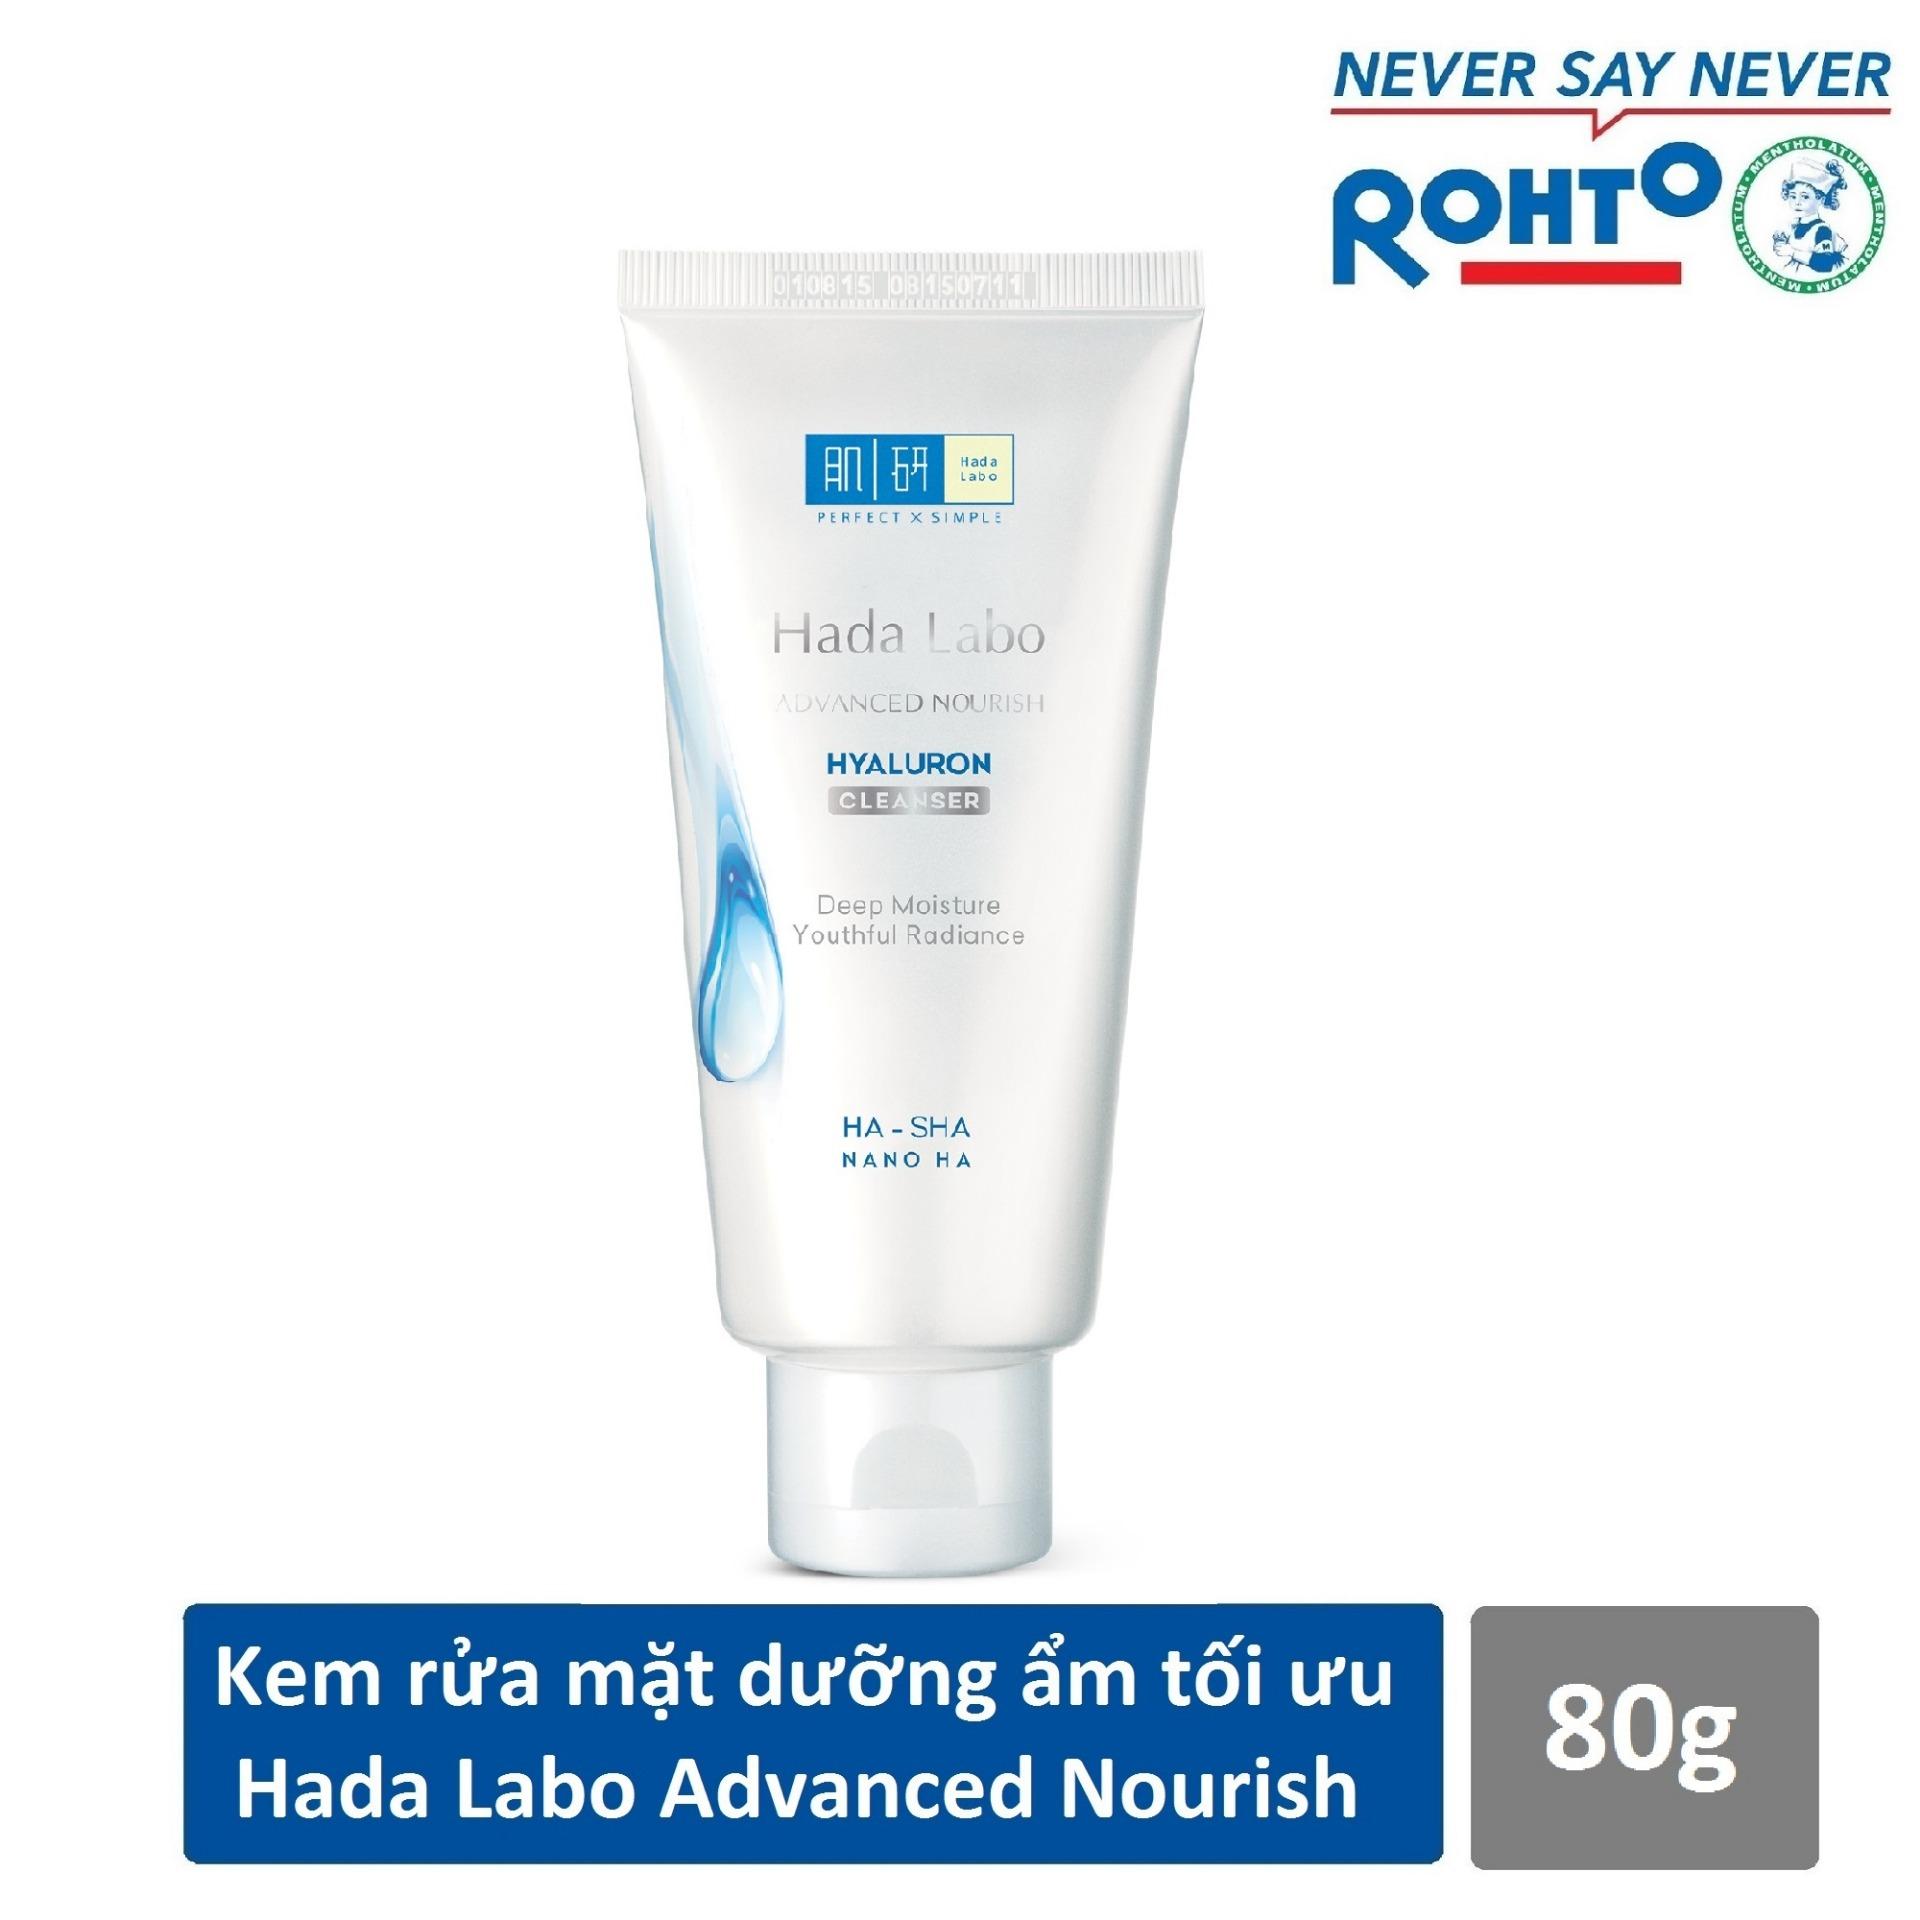 Hada Labo Advanced Nourish Hyaluron Cleanser – Tuýp màu trắng, giúp dưỡng ẩm da. (Nguồn ảnh: Internet)